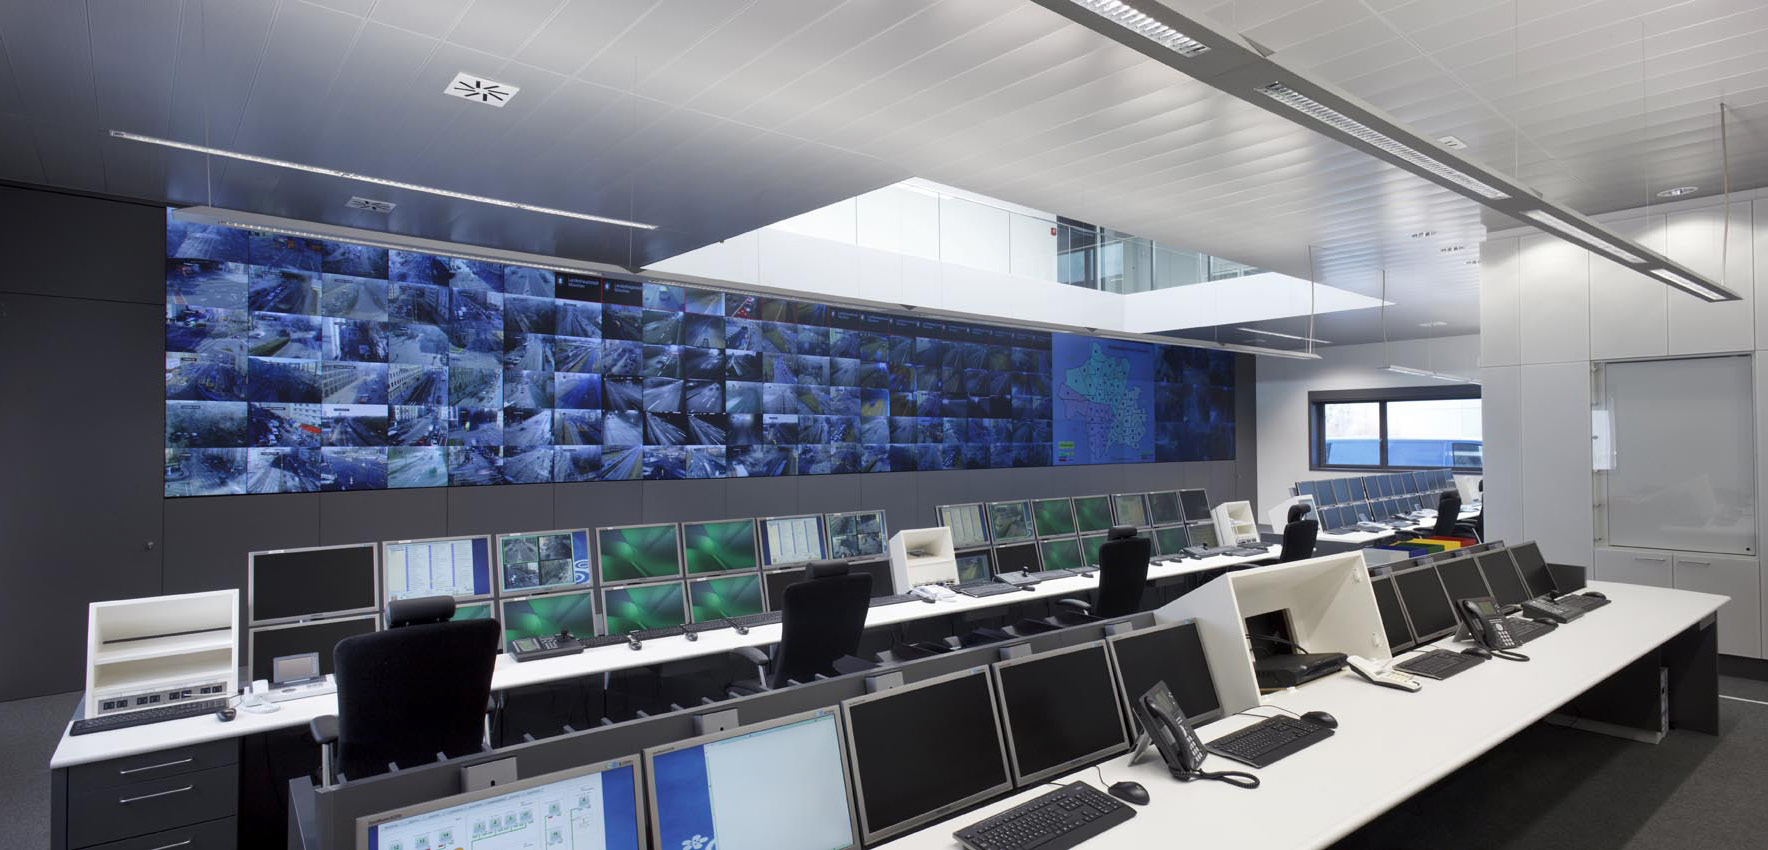 Die Verkehrsleitzentrale München ist Europas modernste zentrale Steuerungseinheit zur Lenkung und Überwachung des Verkehrs und der Betriebstechnik. 